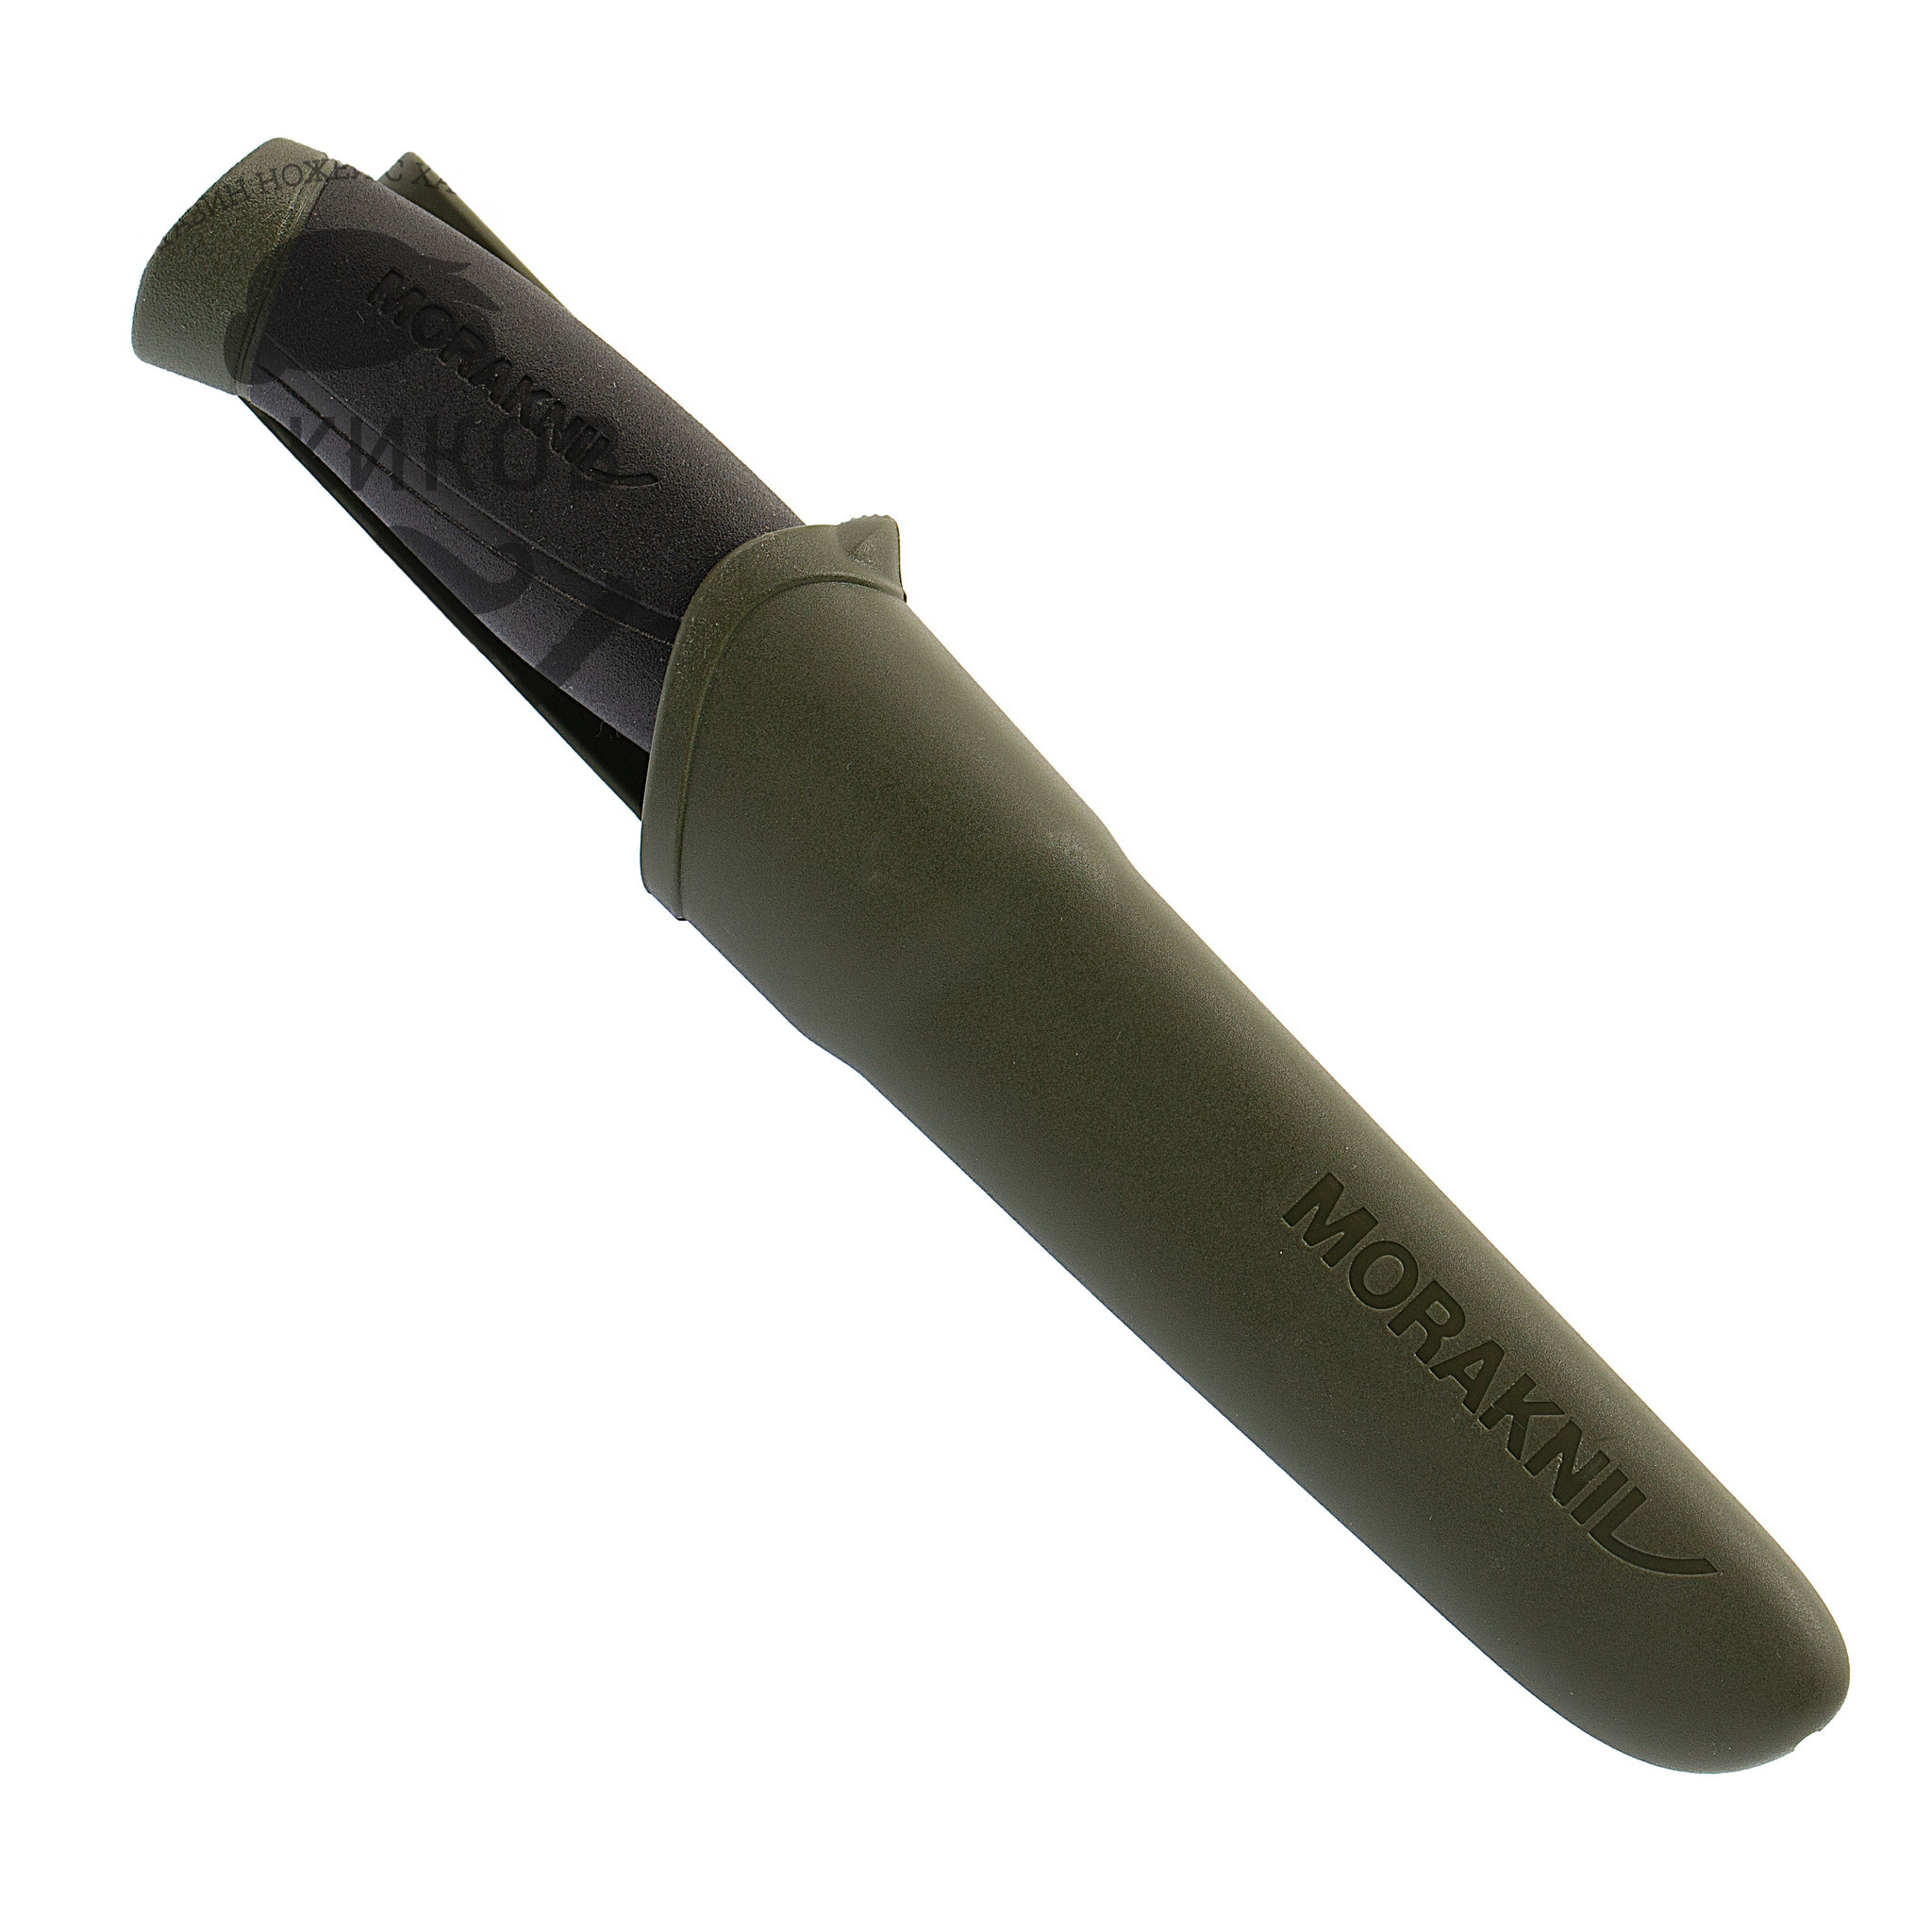 Нож с фиксированным лезвием Morakniv Companion MG (C), углеродистая сталь, рукоять резина/пластик, цвет хаки - фото 5